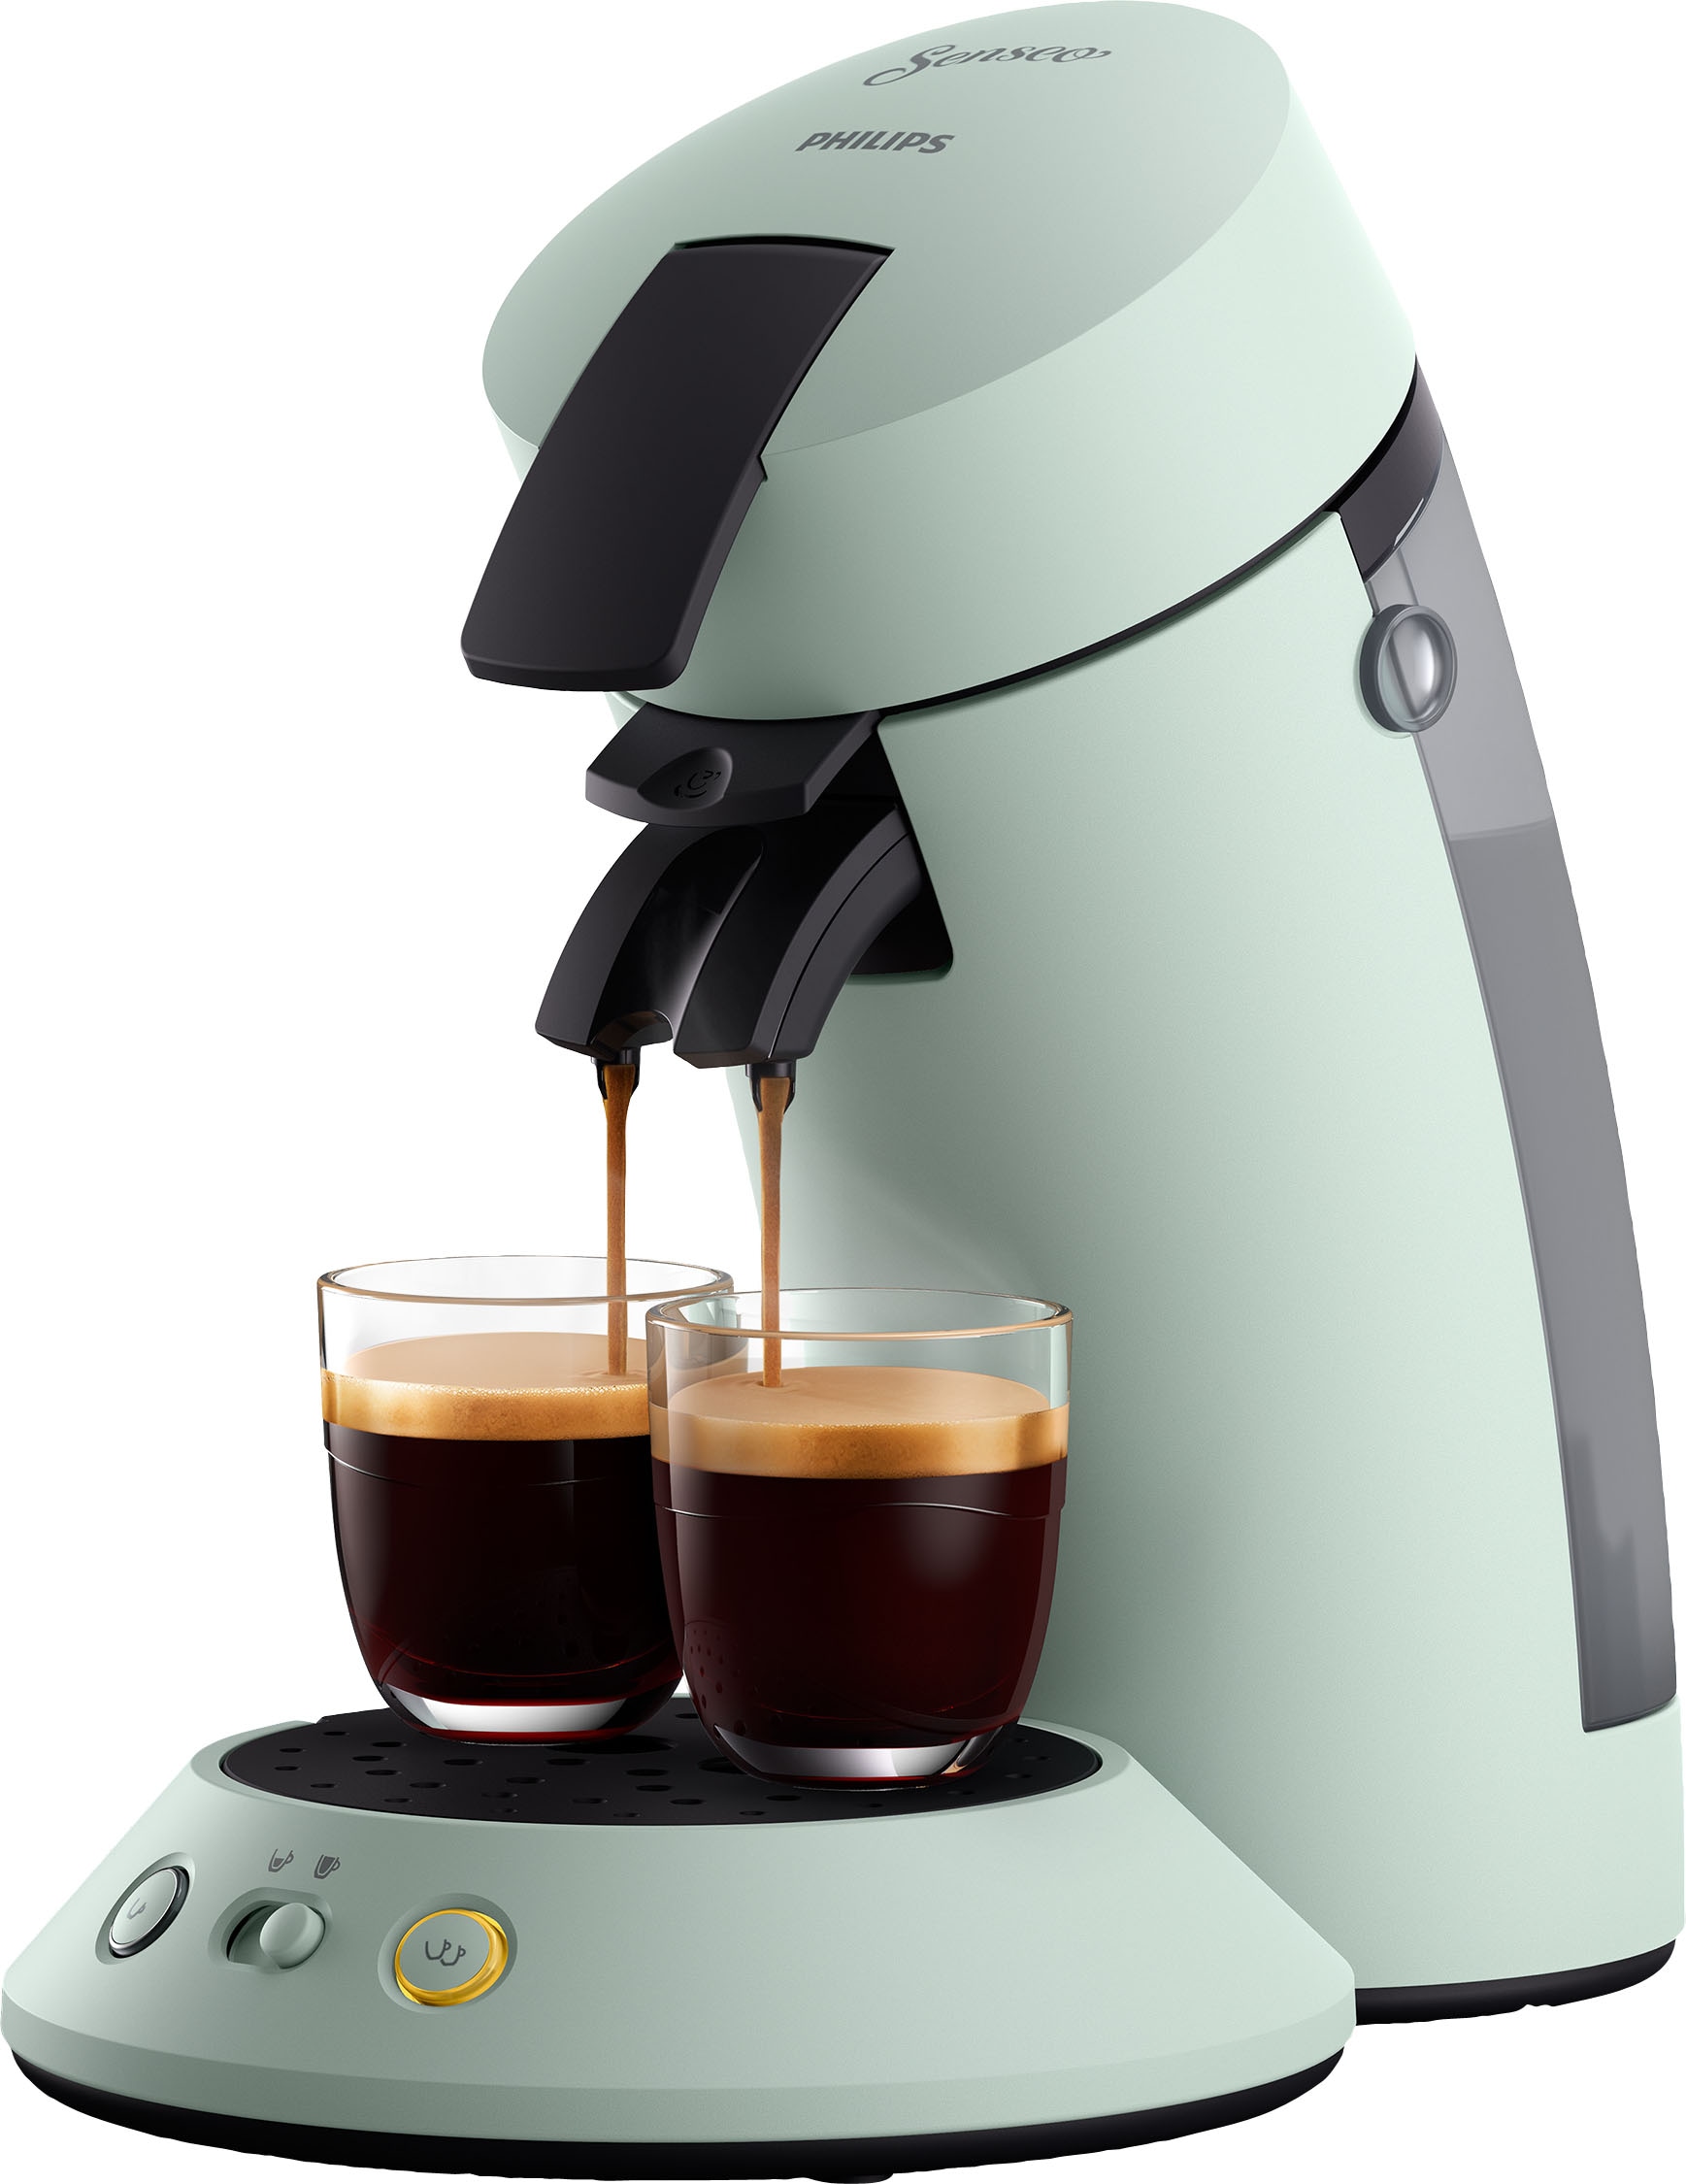 Gratis-Zugaben UVP im Senseo »Original Philips Jahren Kaffeepadmaschine 3 Plus von mit Wert Garantie XXL 5,- CSA210/20«, inkl.